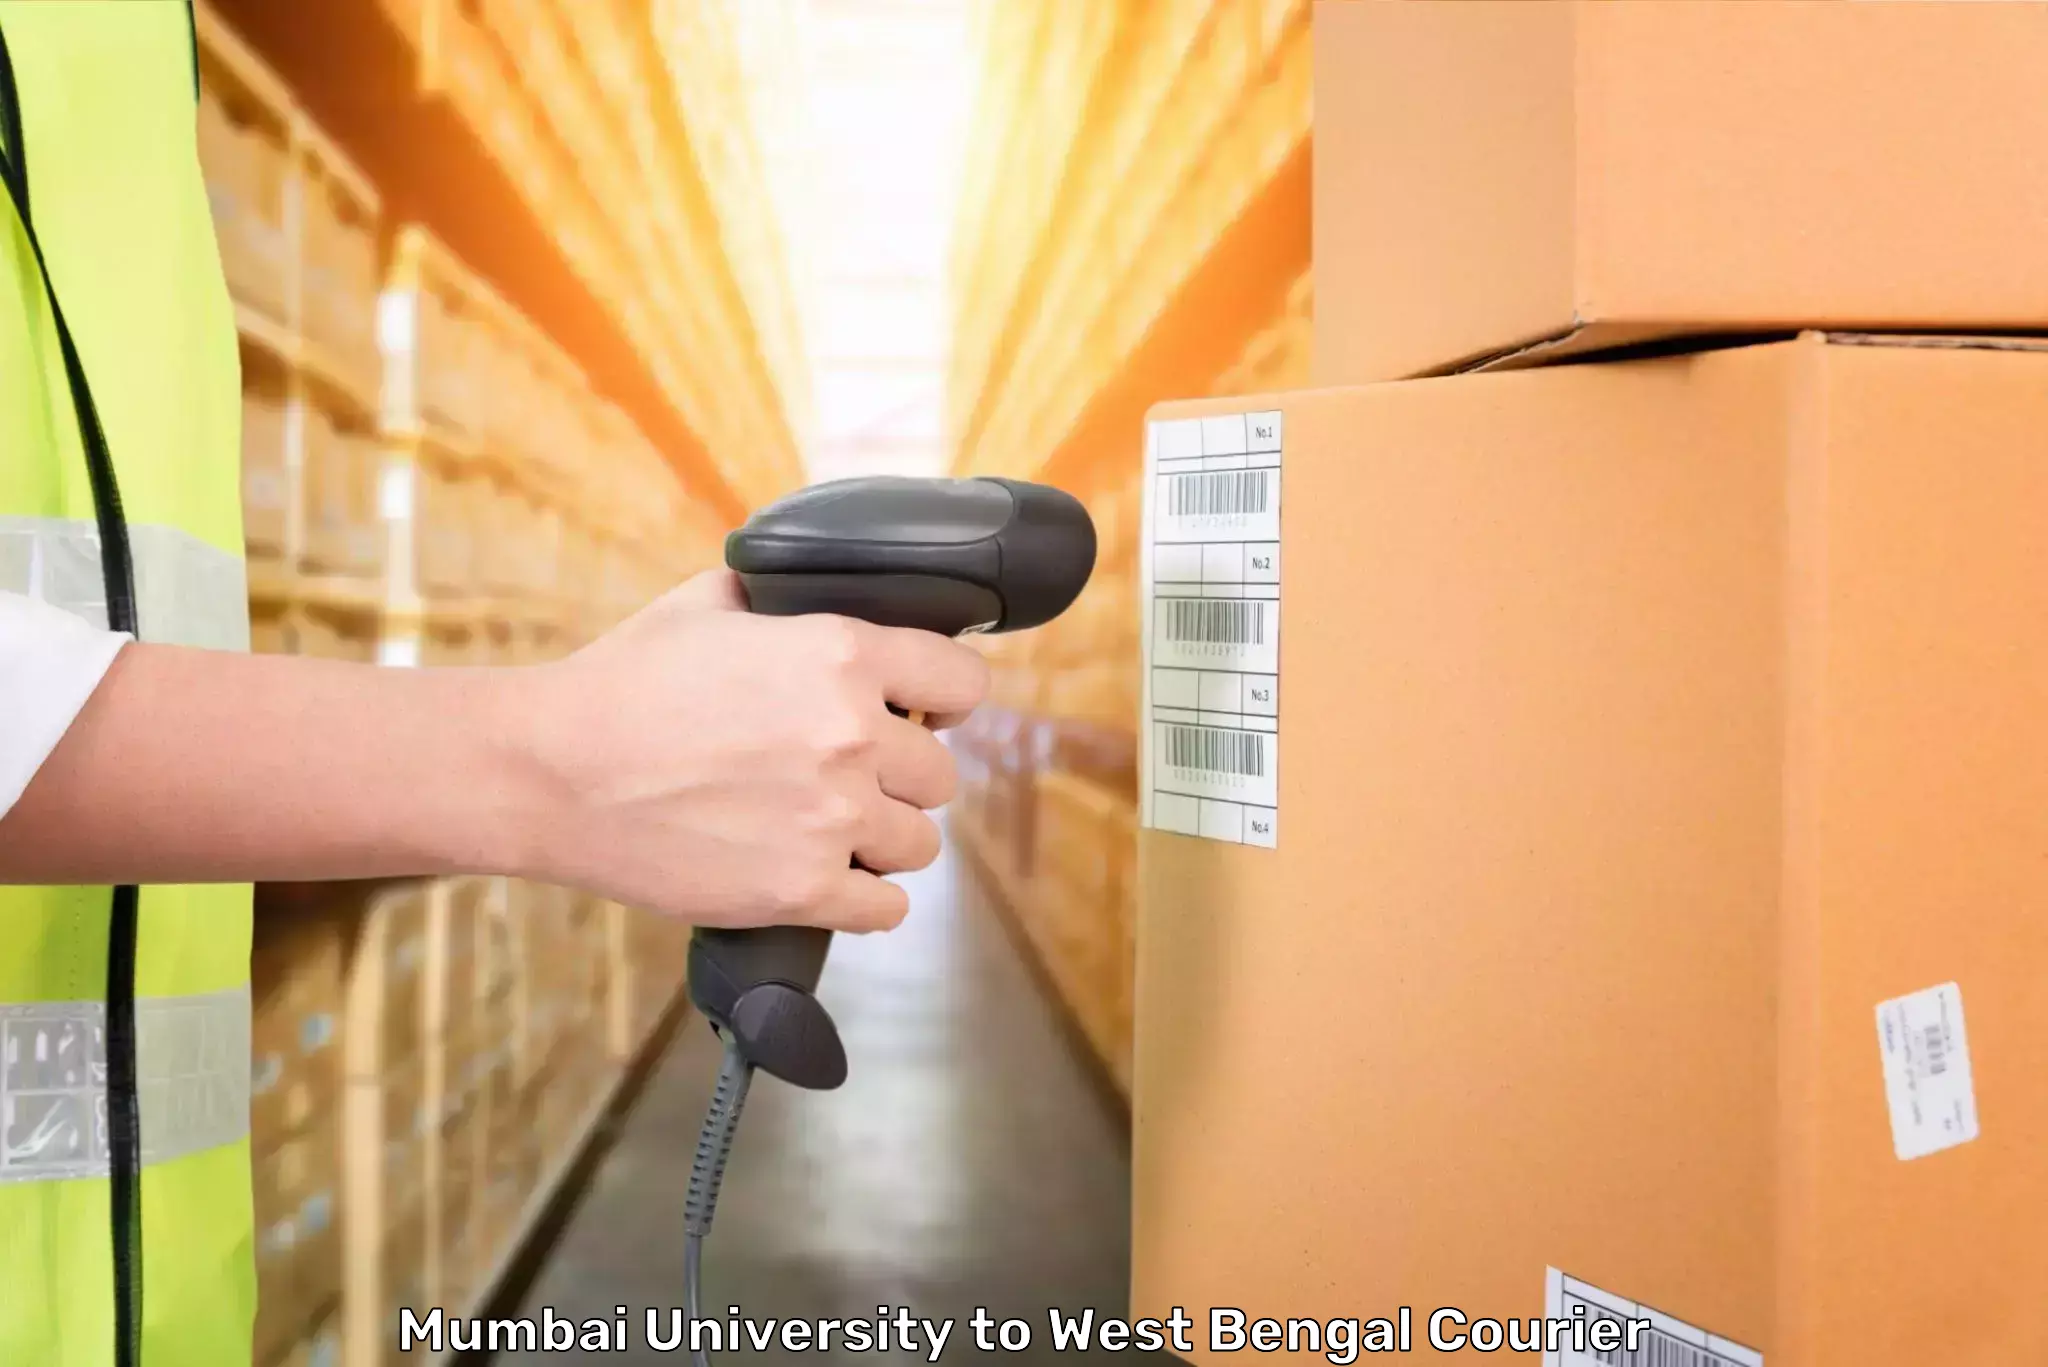 Luggage shipment tracking Mumbai University to Ama Dubi